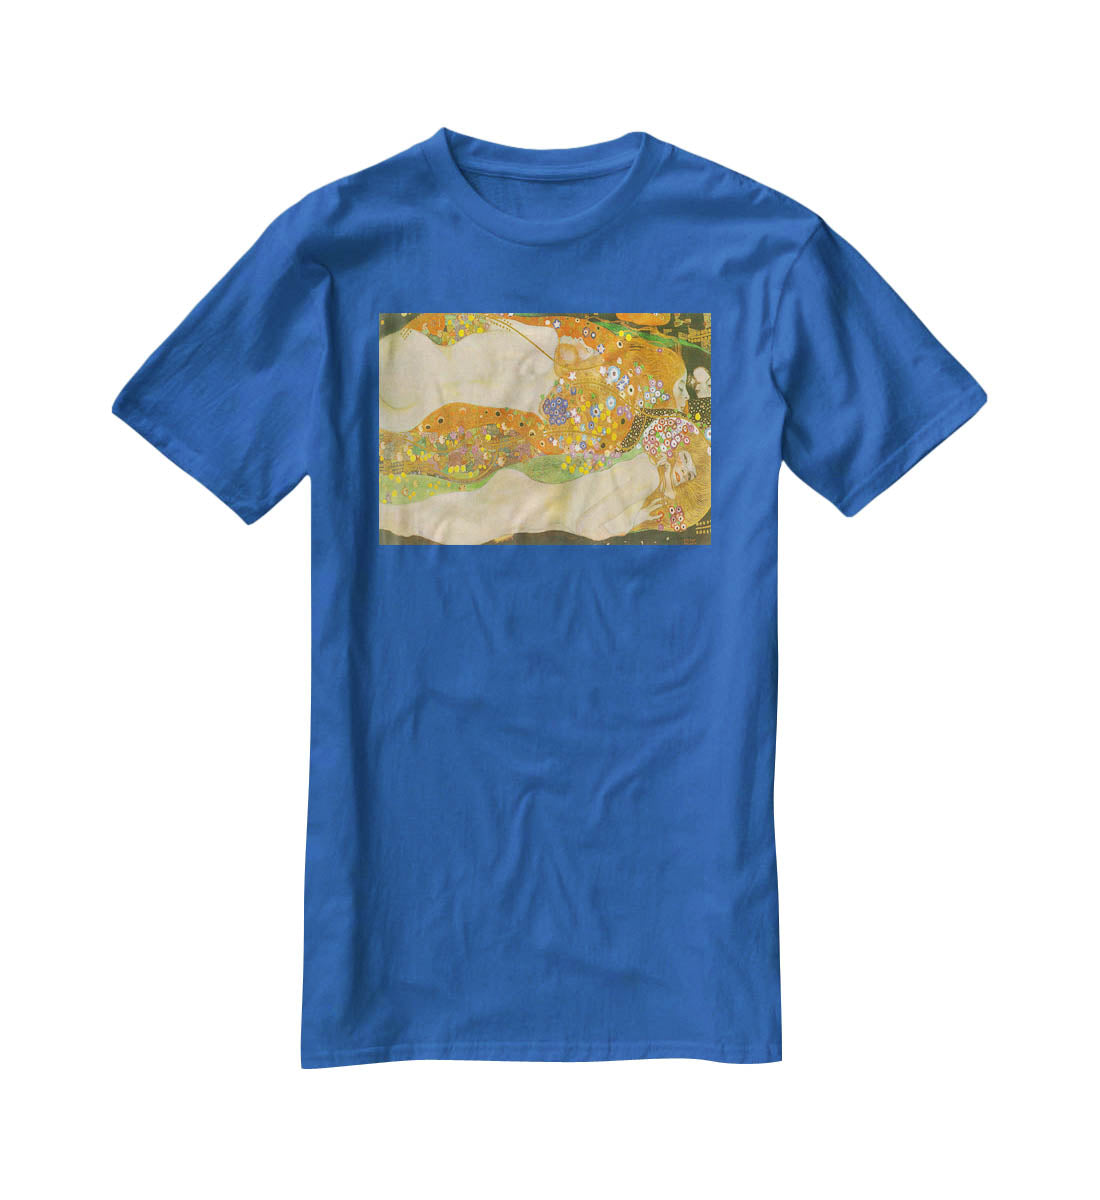 Water snakes friends II by Klimt T-Shirt - Canvas Art Rocks - 2